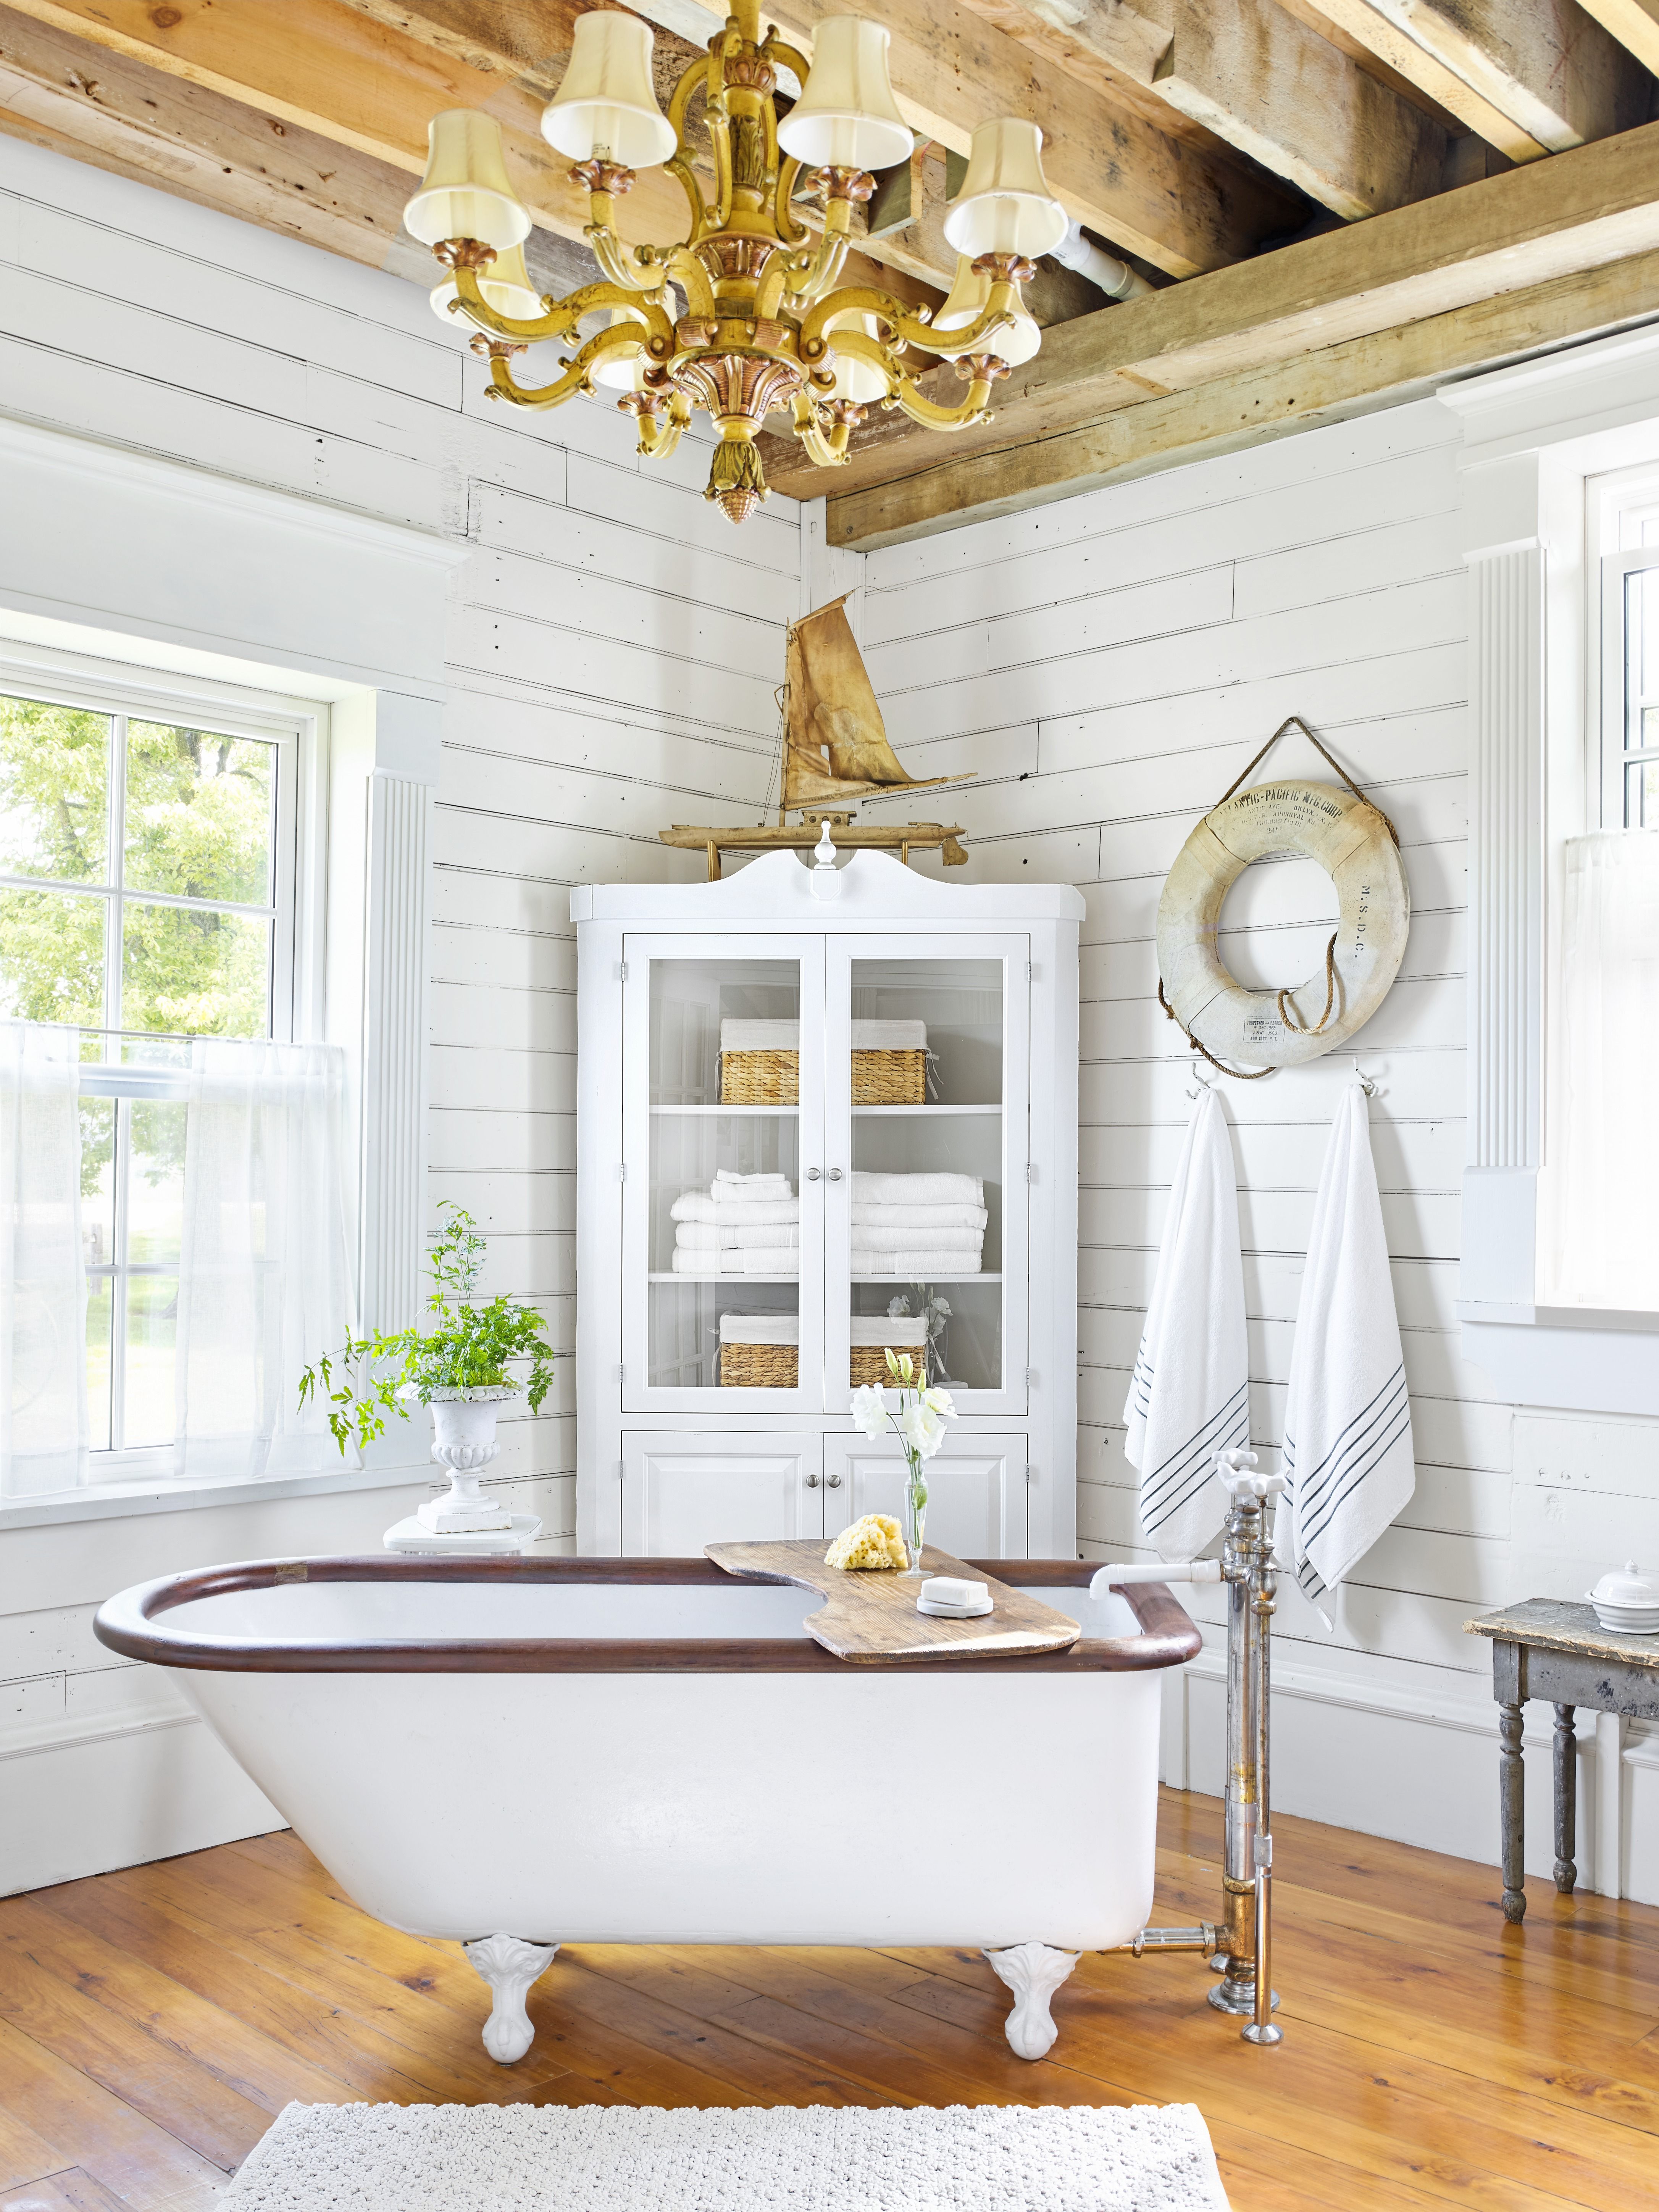 Clawfoot Tub Ideas For Your Bathroom, Clawfoot Tub Bathroom Ideas